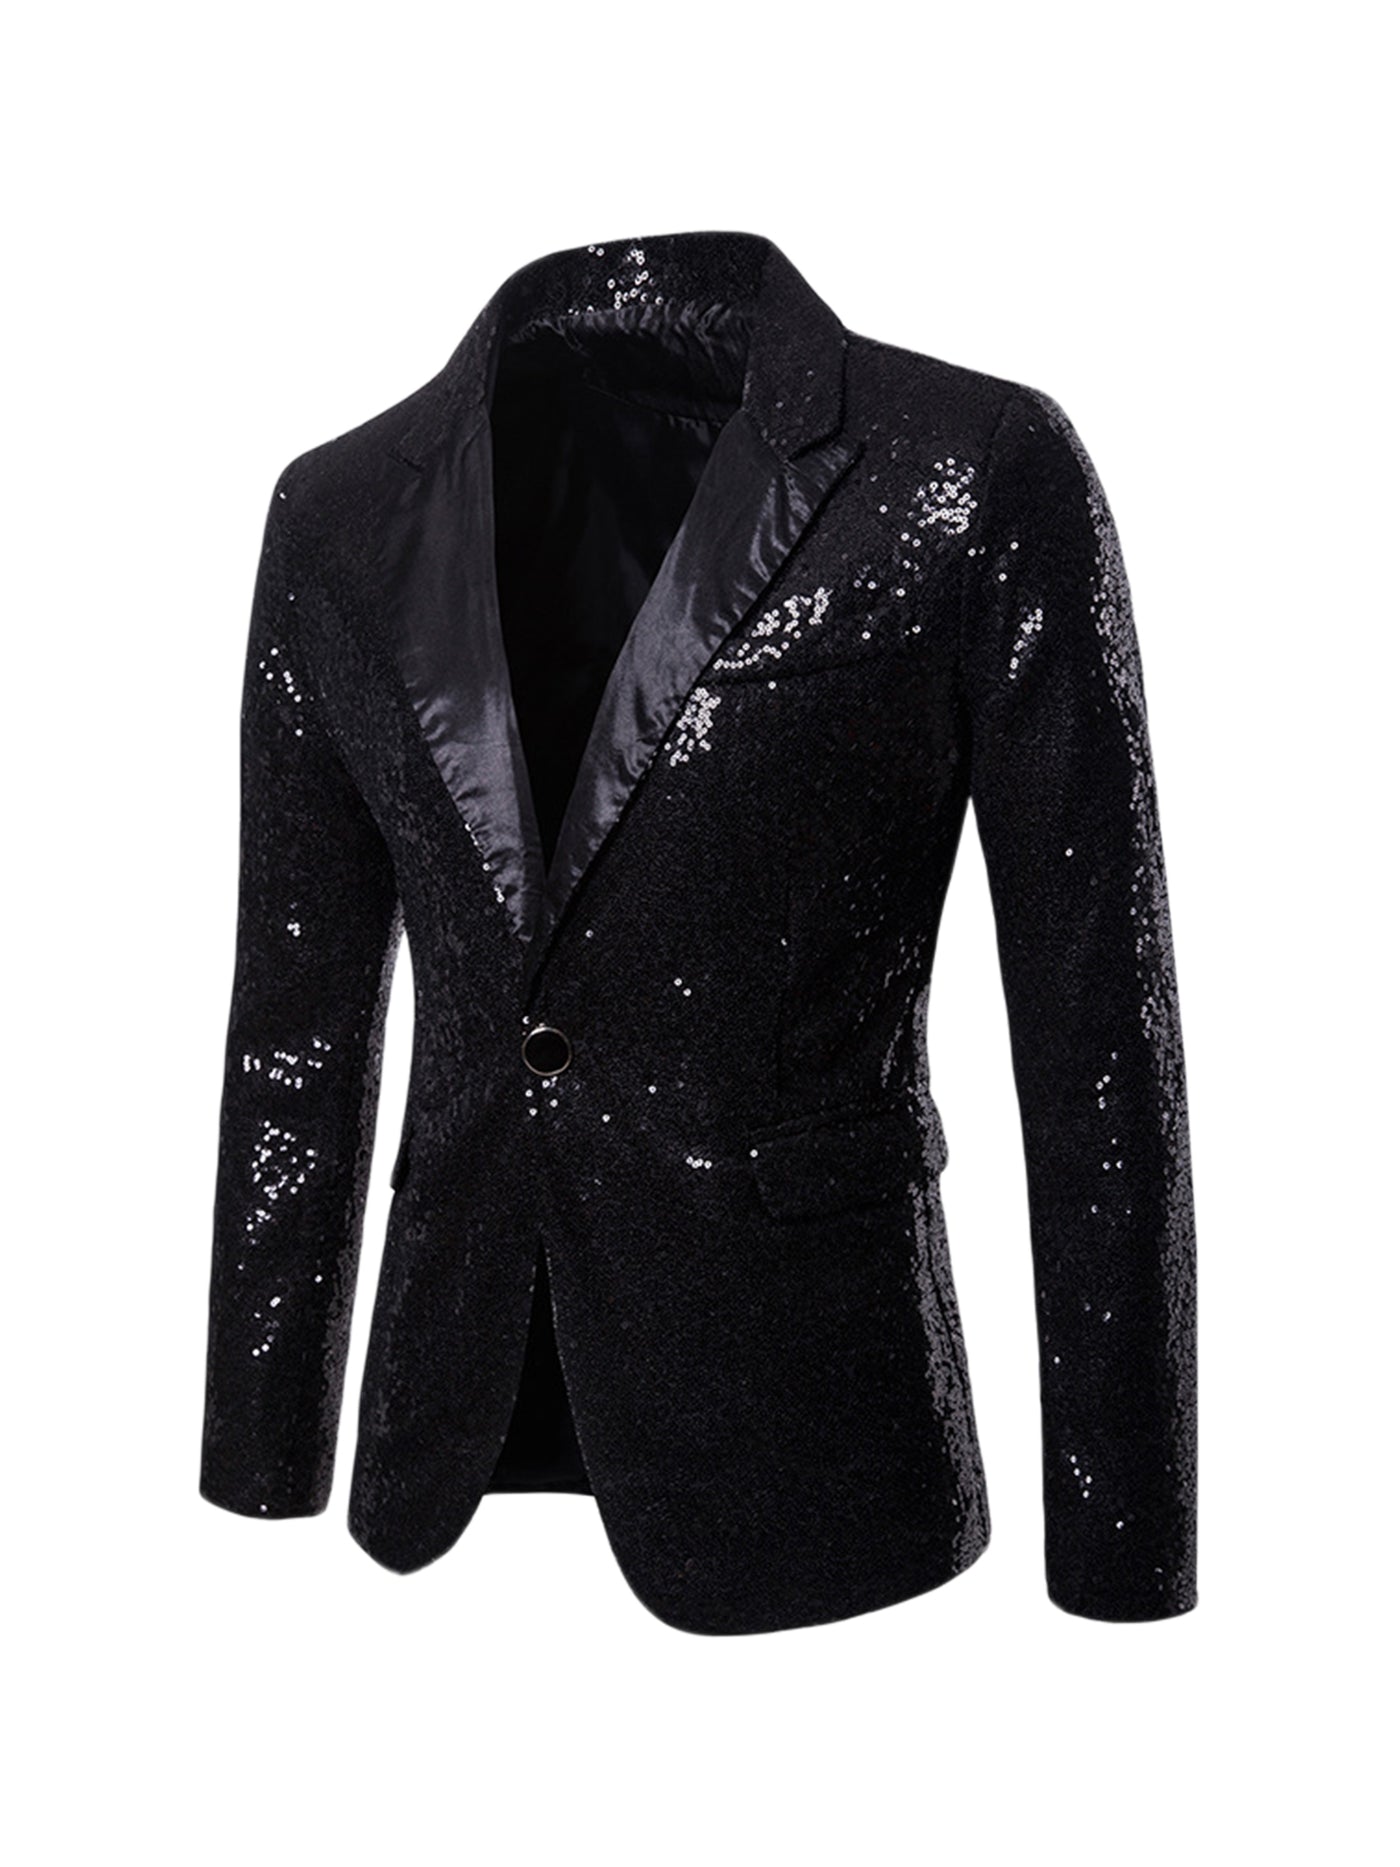 Bublédon Men's Sequin Suit Jacket Peak Lapel Sparkly Party Show Glitter Sports Coat